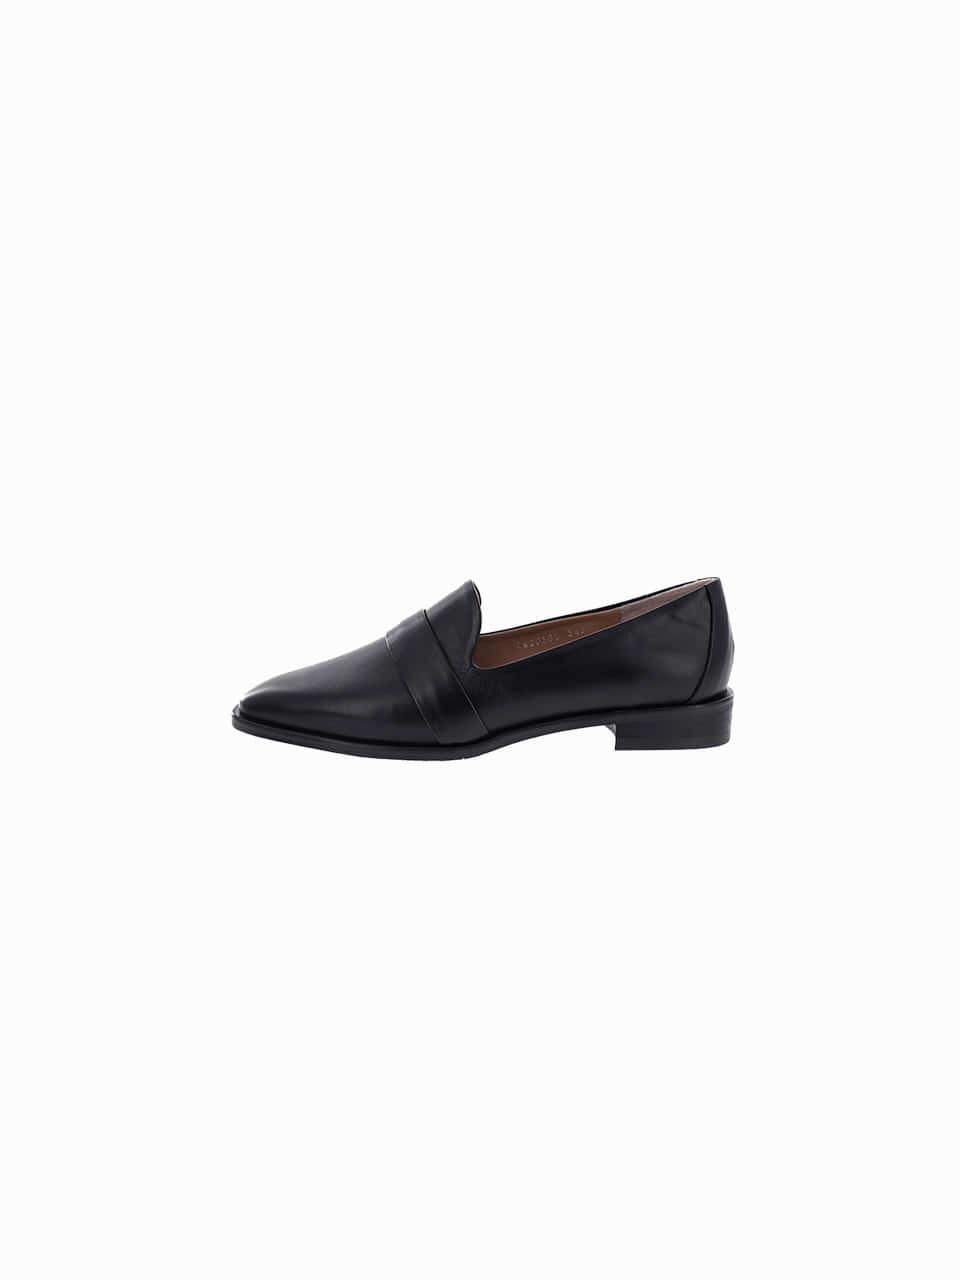 [스크래치샘플2차]new loafer ver shoes_black_20501